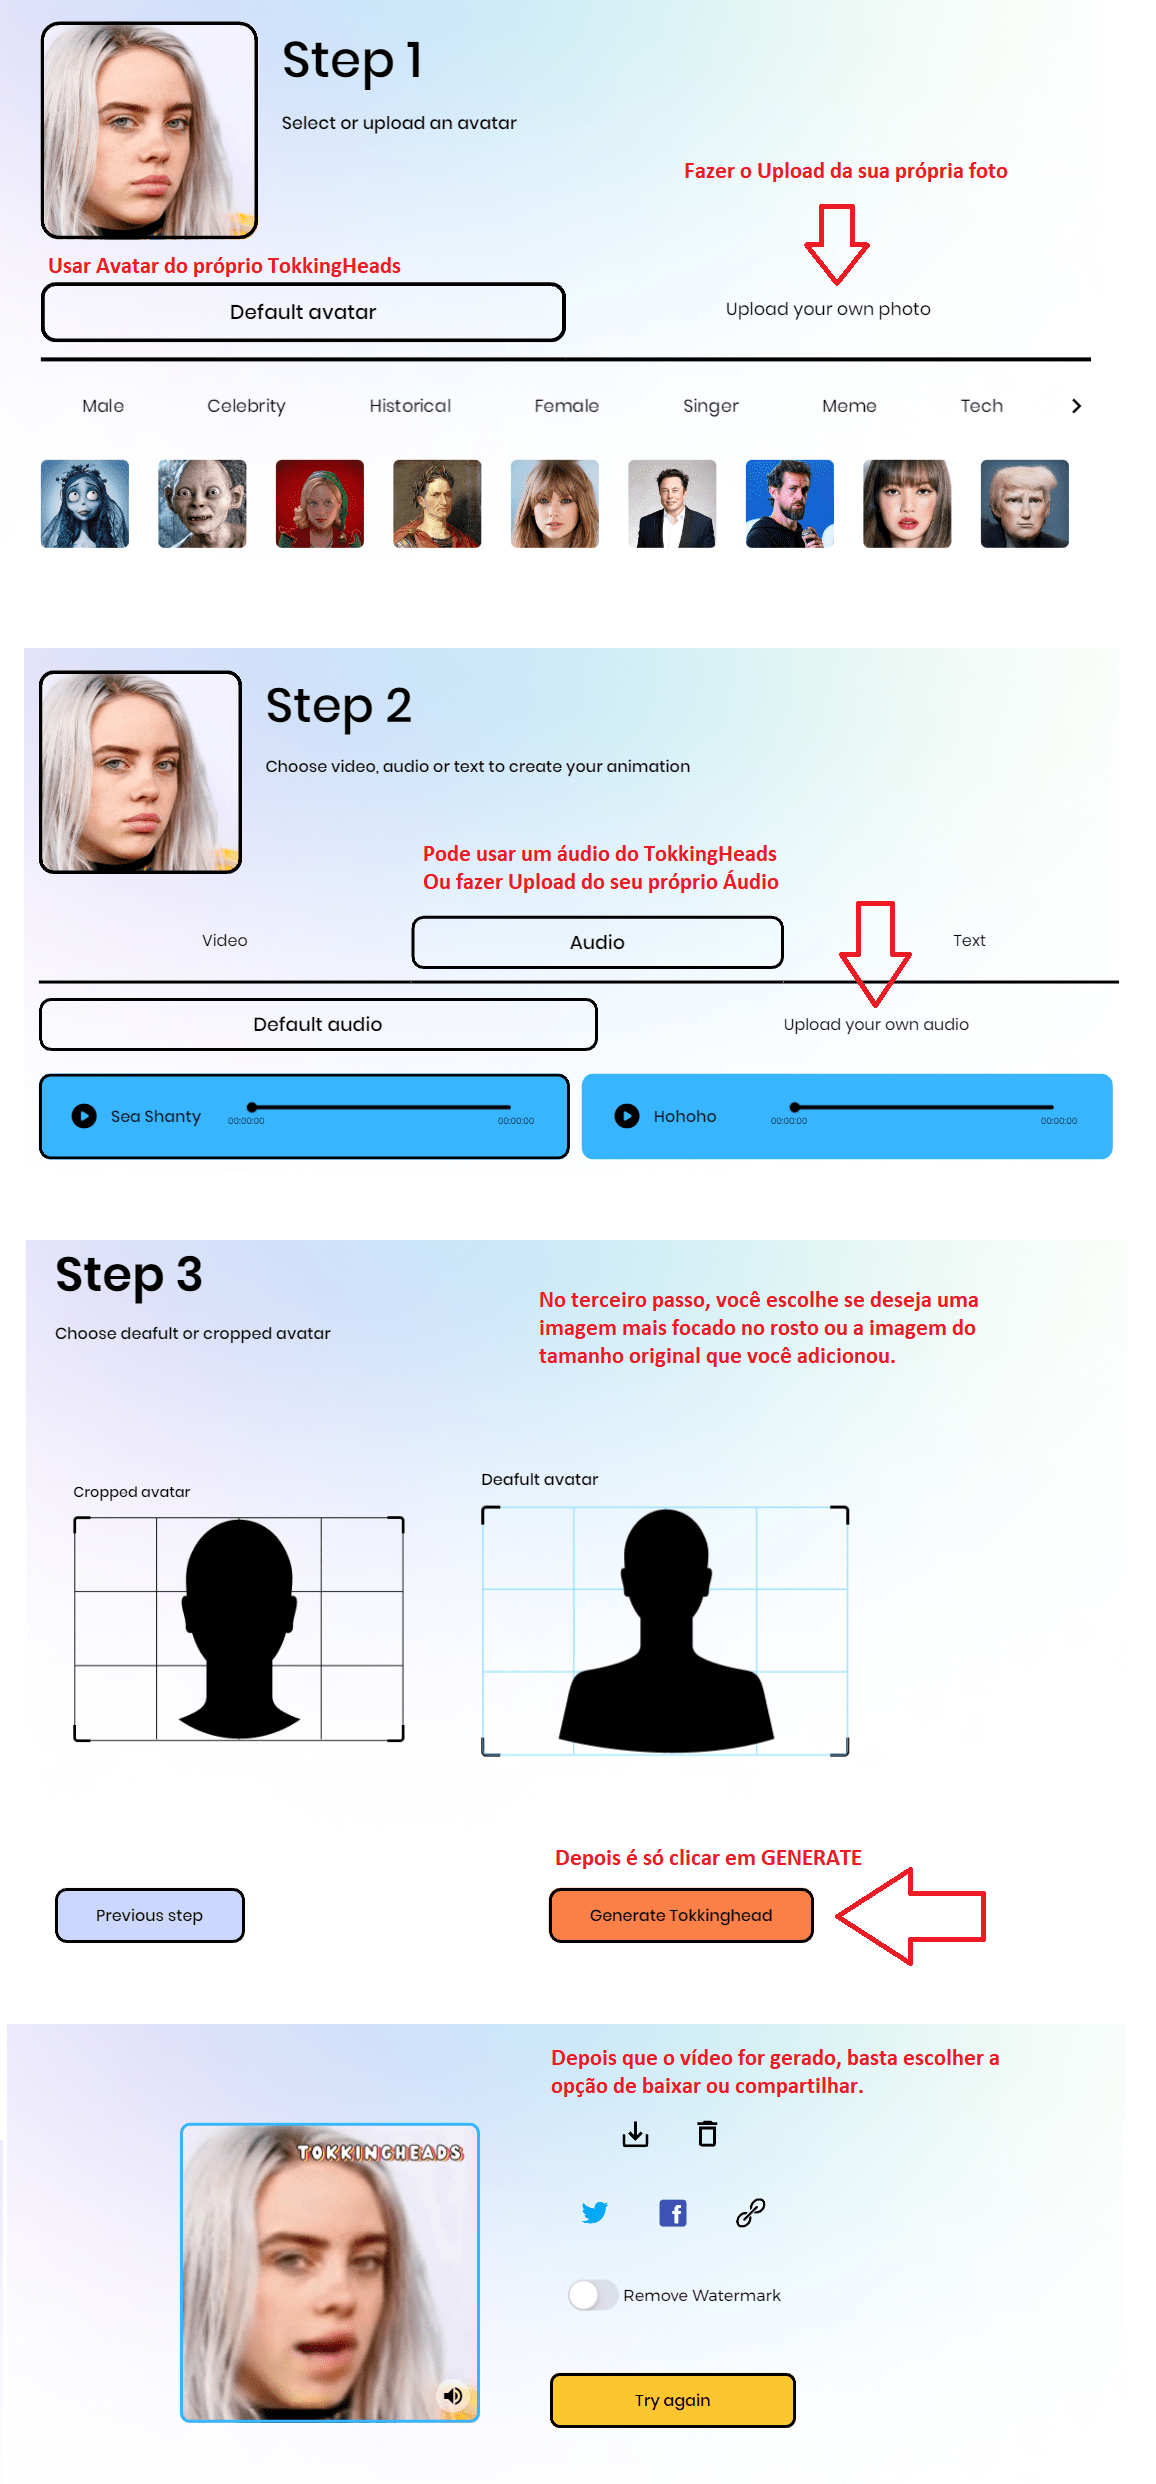 Como usar avatar no TikTok